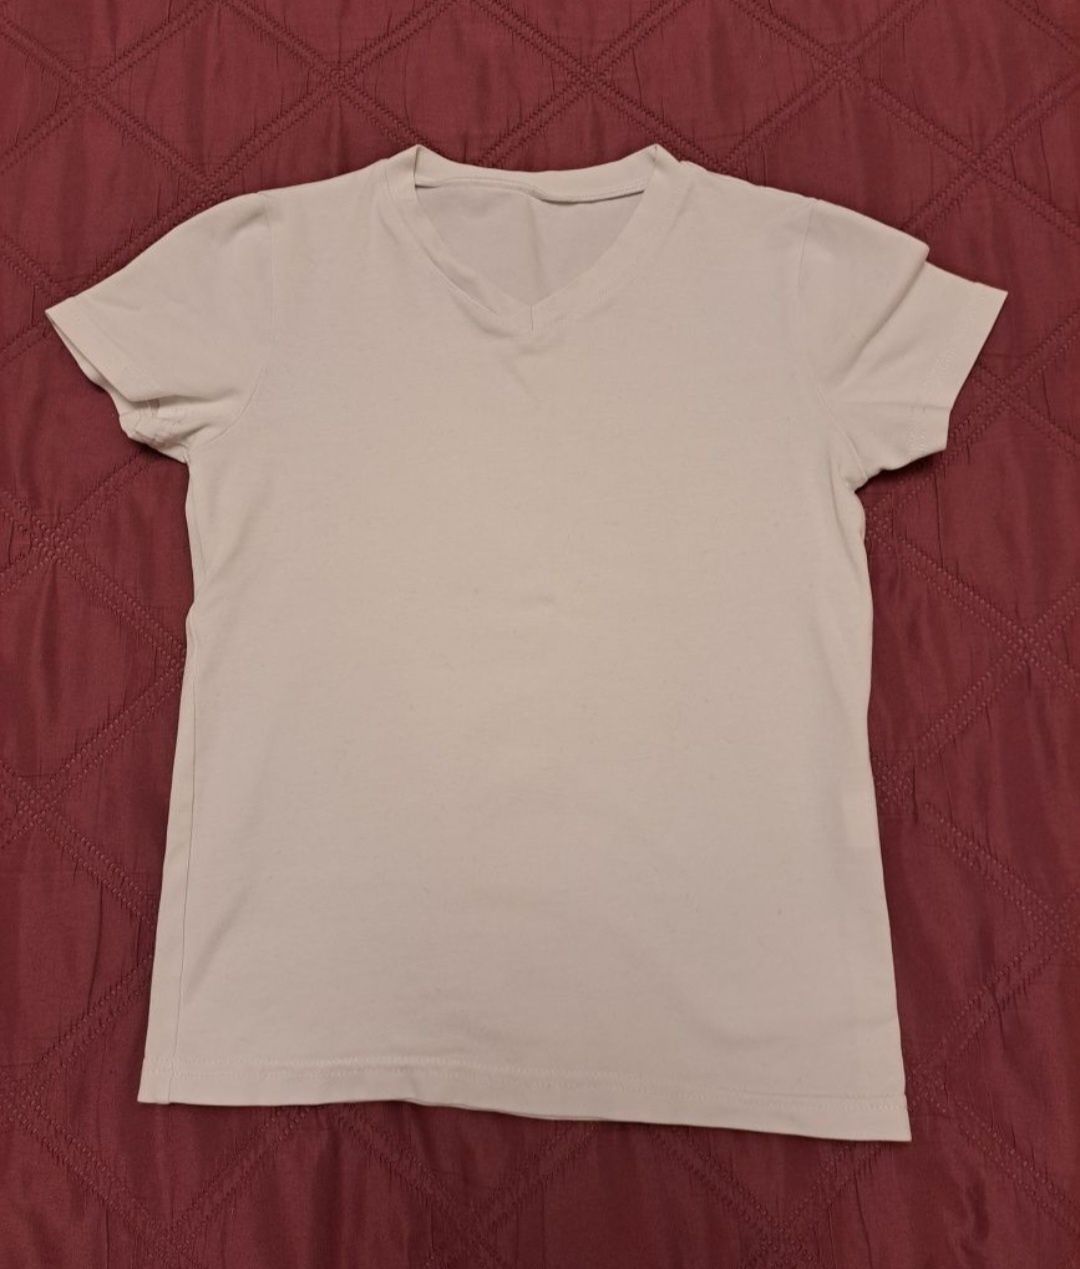 Турнирная рубашка для бальных танцев на рост 146-152, бабочки,футболка